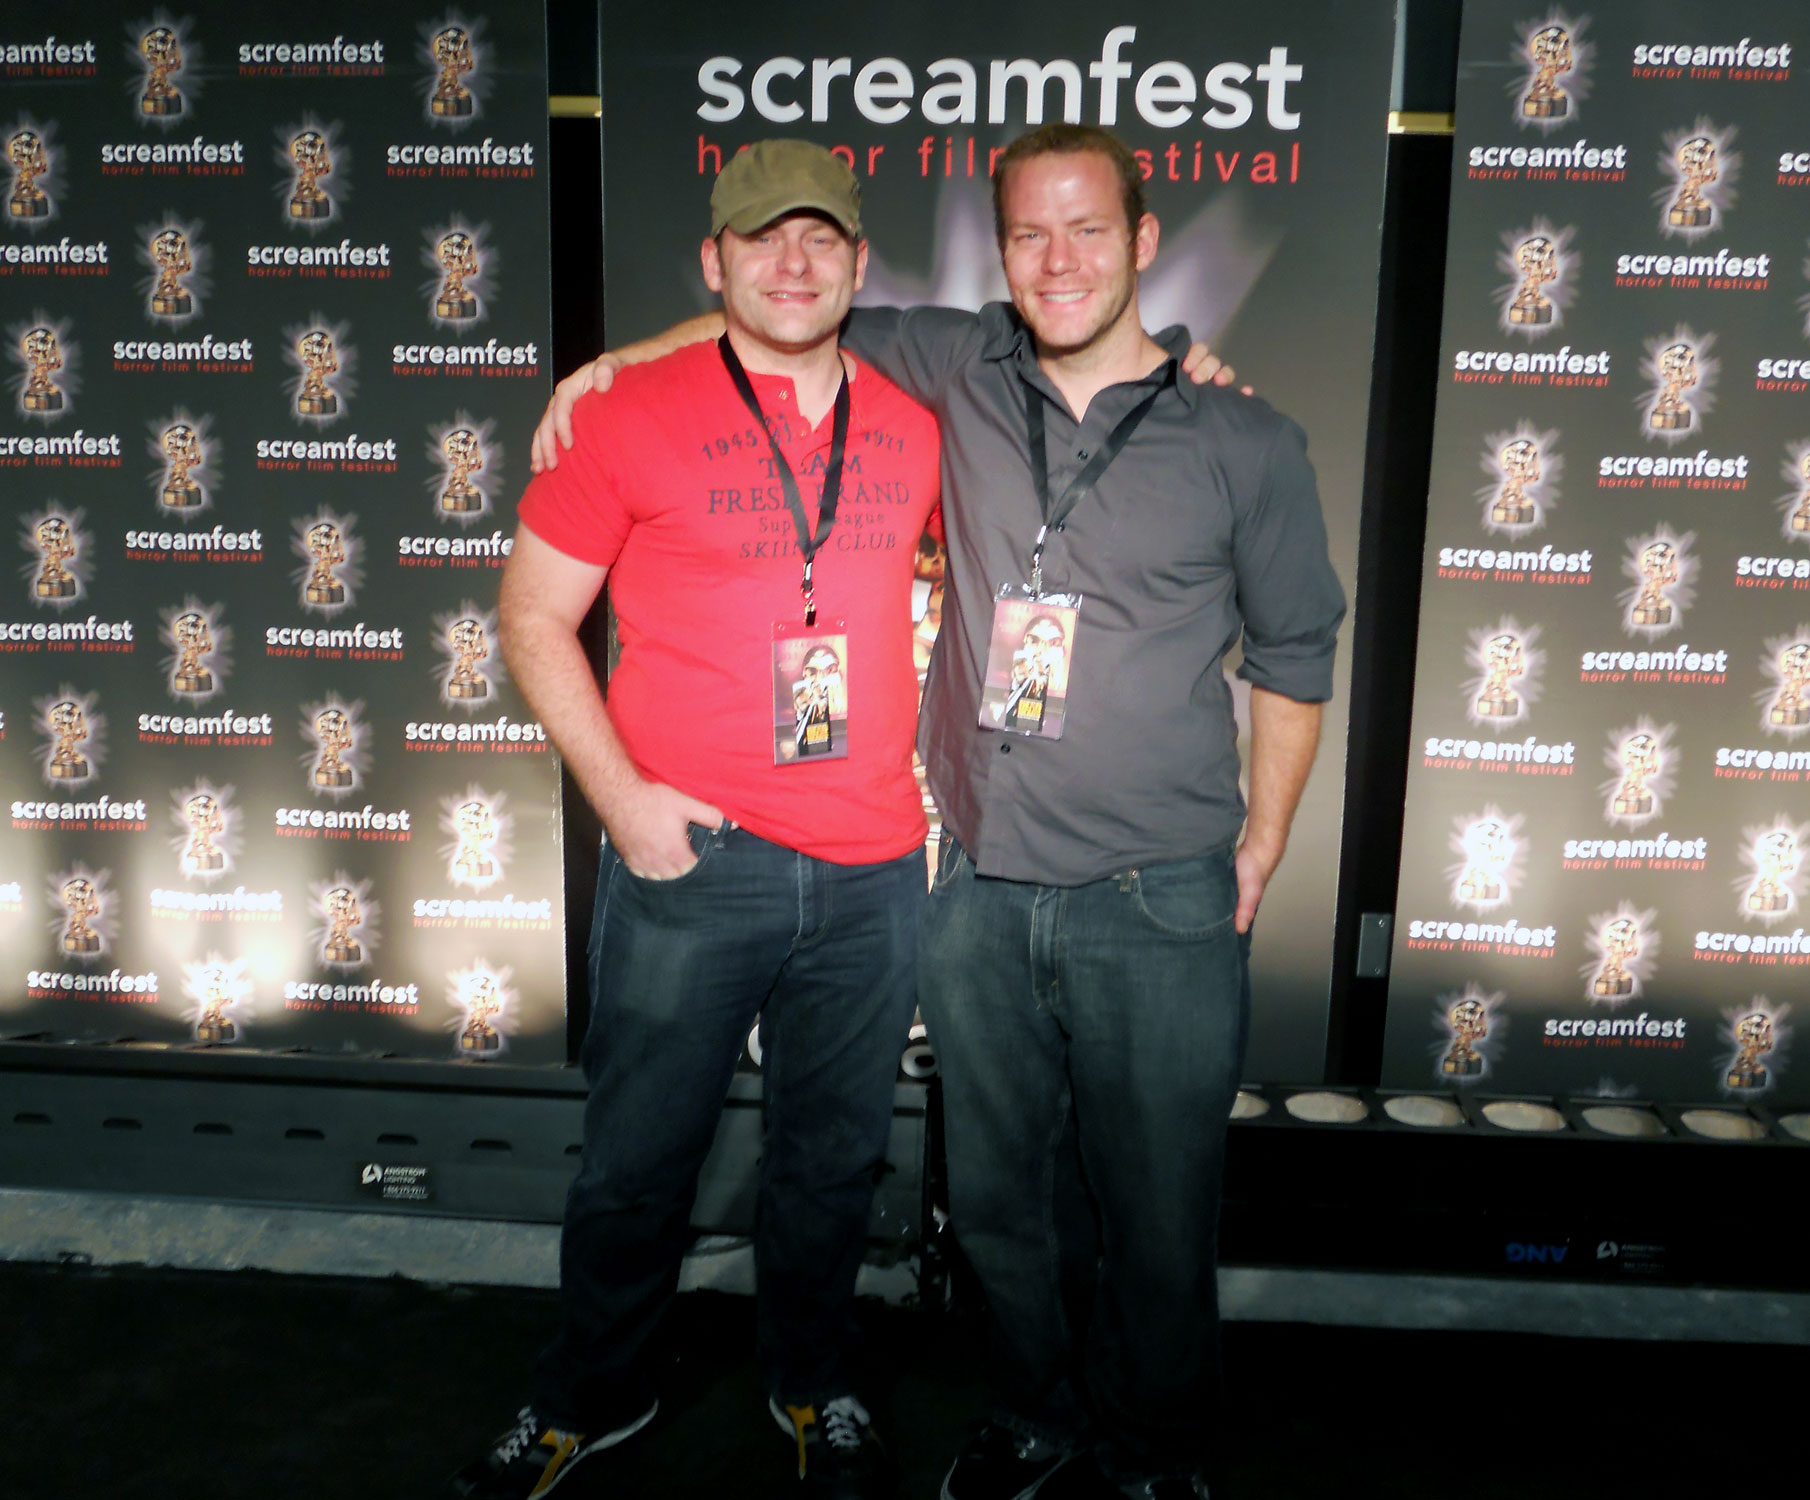 Screamfest 2011 DEADHEADS Premiere